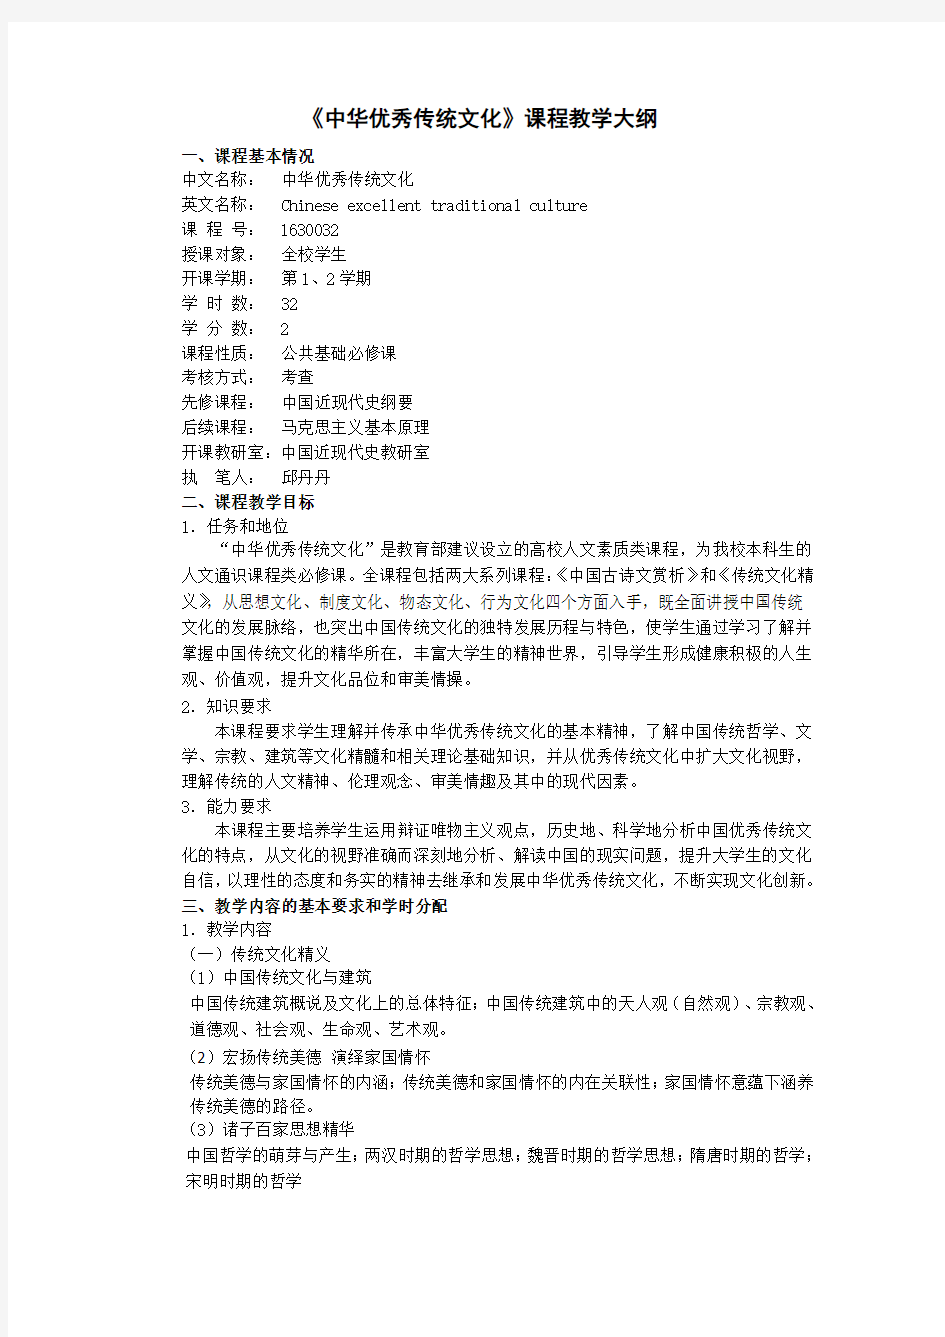 中华优秀传统文化教学大纲(32学时)